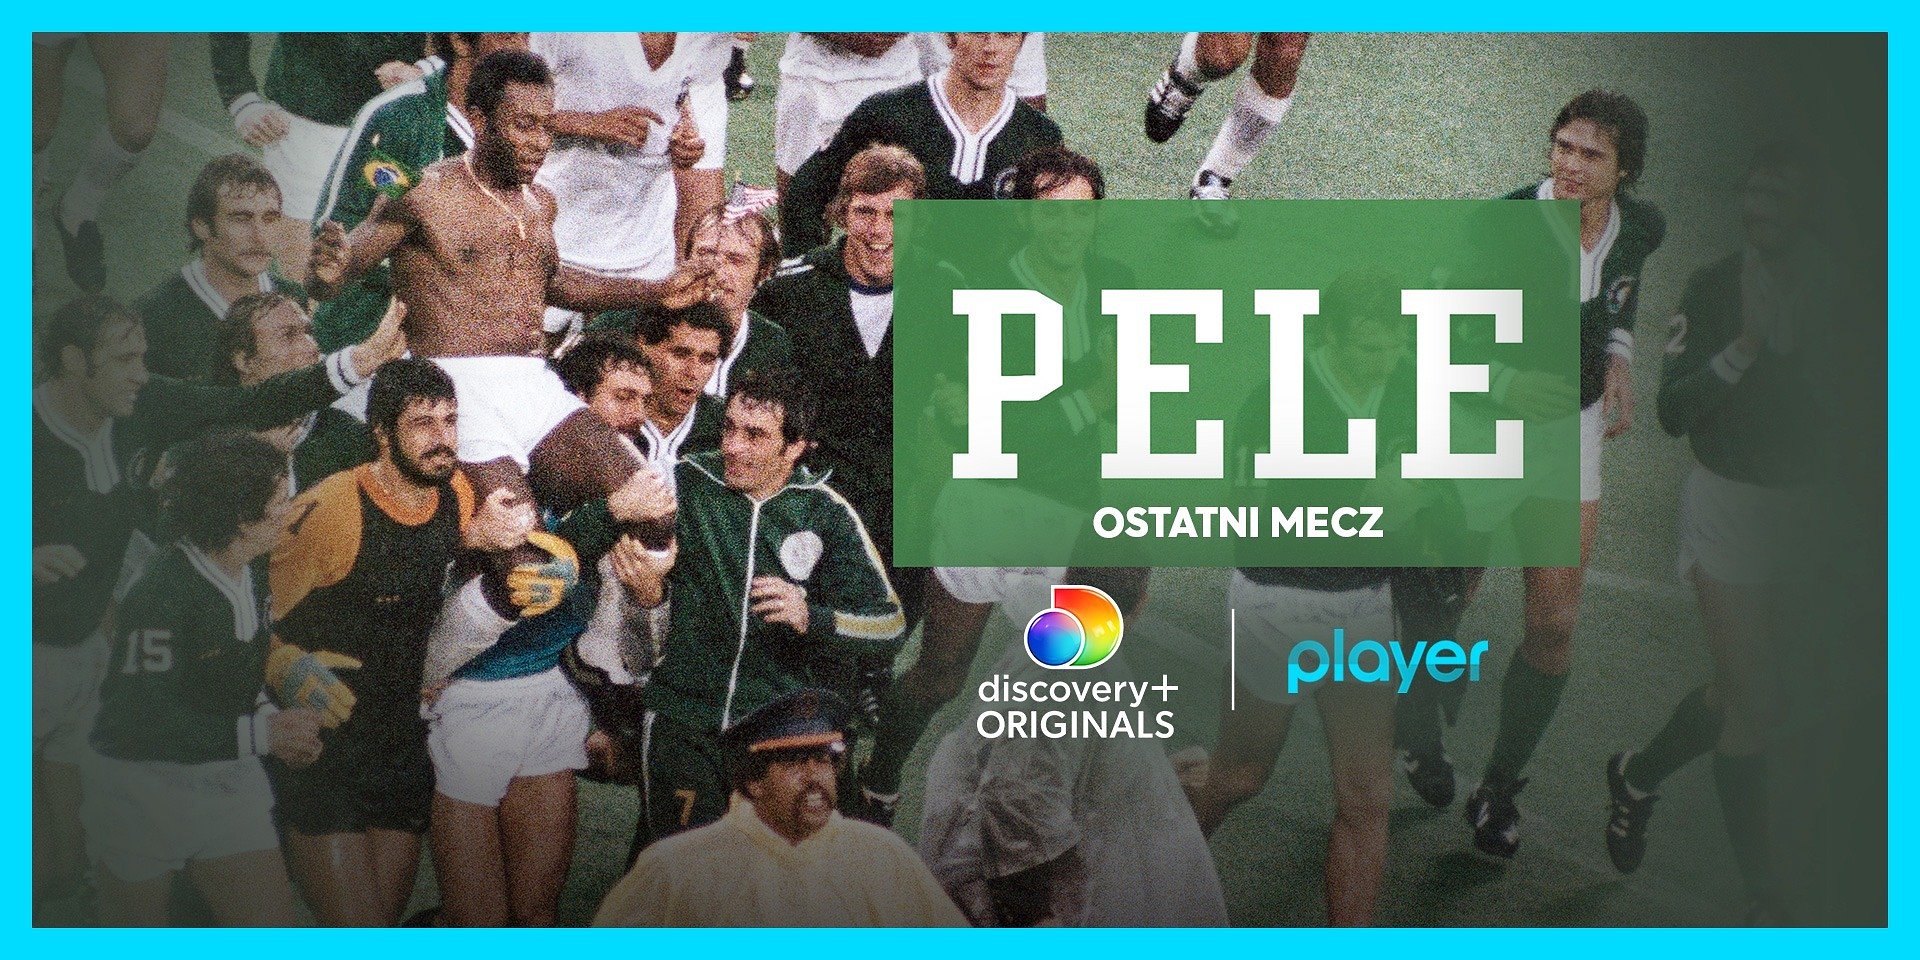 „Pele: ostatni mecz” i kolekcja świetnych dokumentów discovery+ Originals o piłce nożnej tylko w Player!